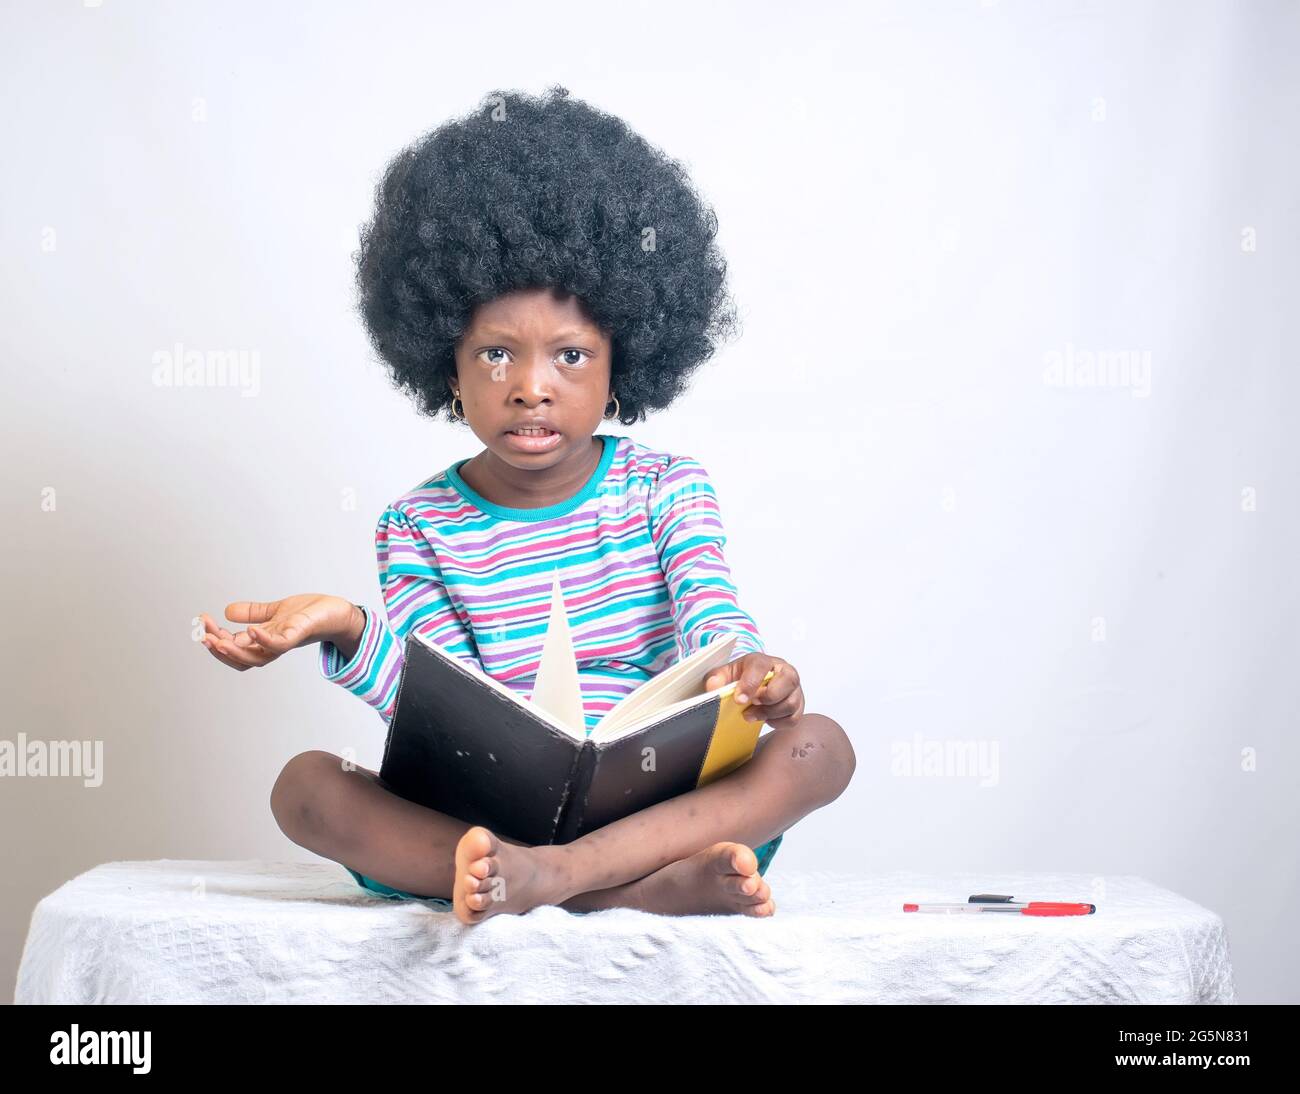 Afrikanisches Mädchen mit afro-Frisur zeigt ihre Liebe zur Bildung, während sie sitzt und einen Stift hält und auch ein Buch auf dem Schoß hat Stockfoto